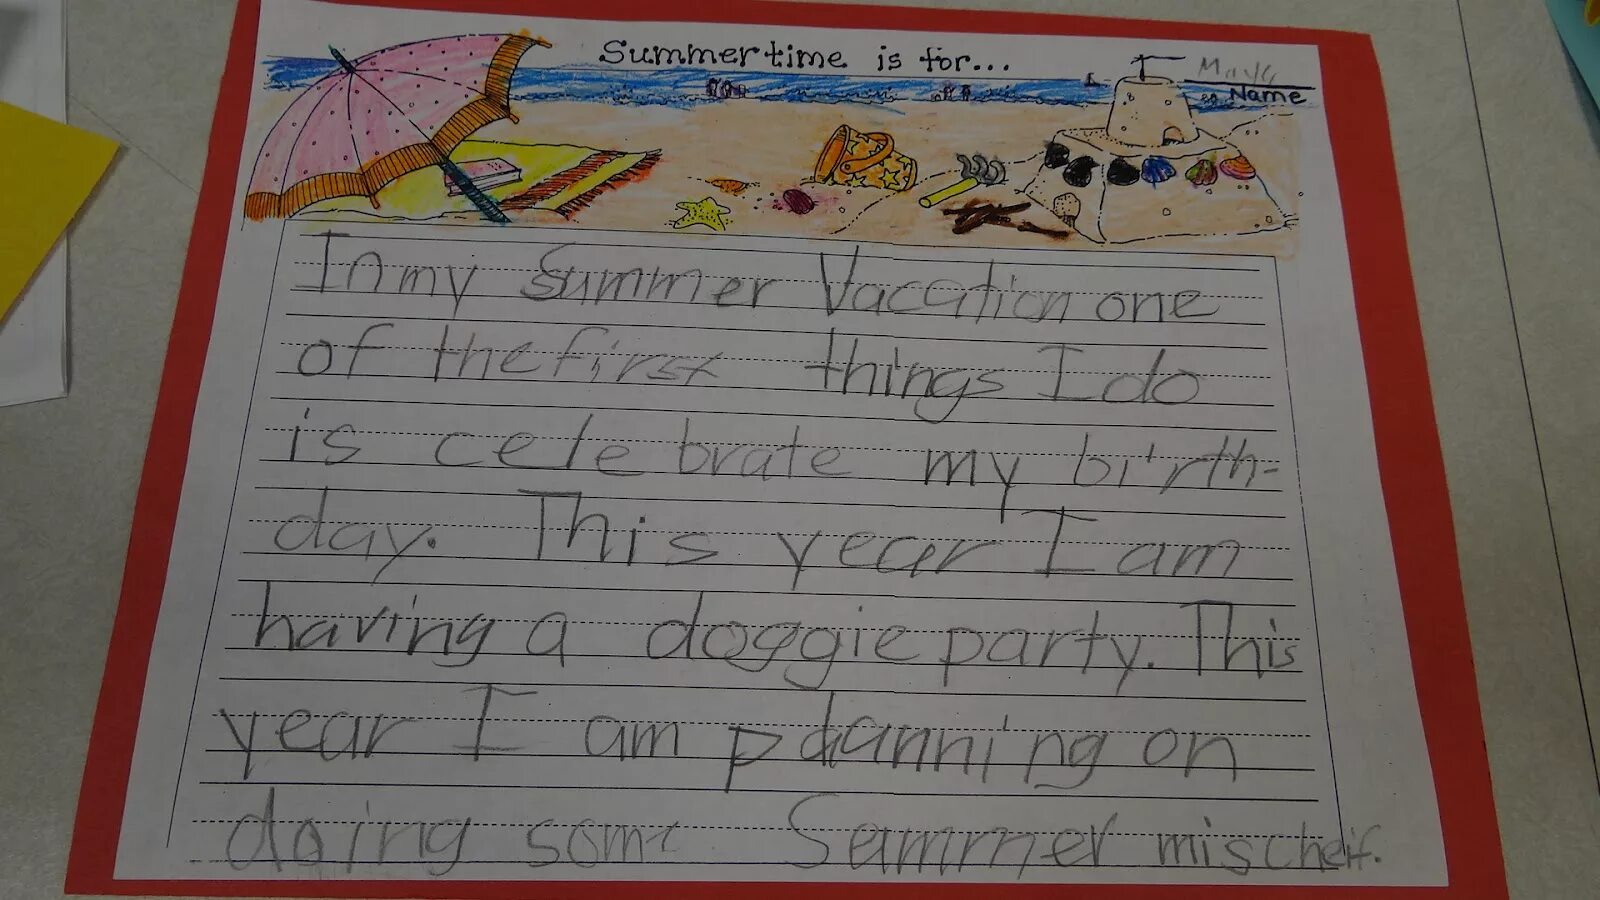 How i spent my Summer проект 5 класс. Проект my Summer 4 класс. Проект по английскому языку 5 класс my Summer Holidays. How i spent my Summer Holidays.